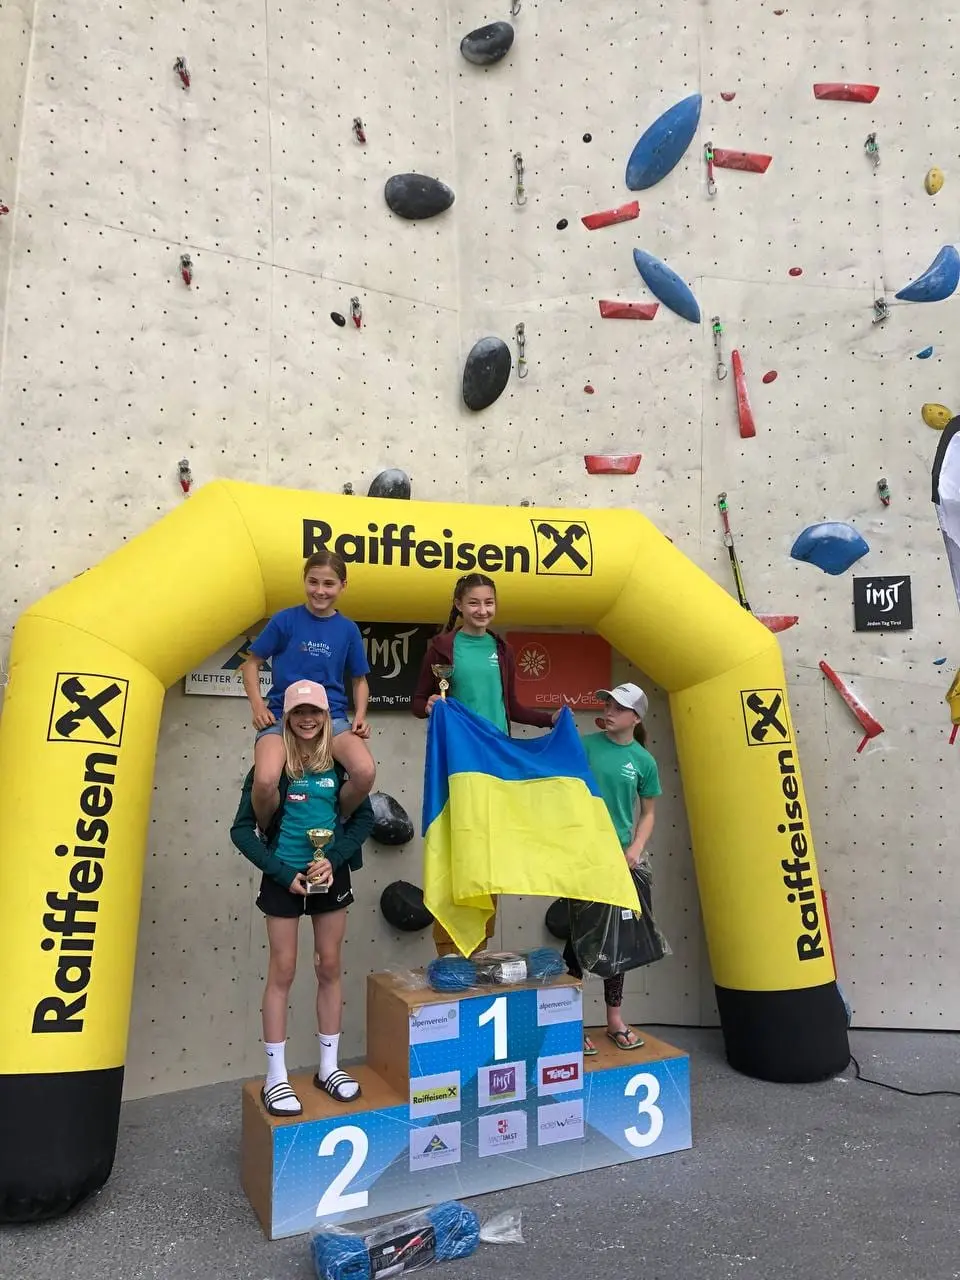  юнацькі змагання зі скелелазіння “Color Fest” в Імст, Австрія. Фото Федерація альпінізму і скелелазіння України 